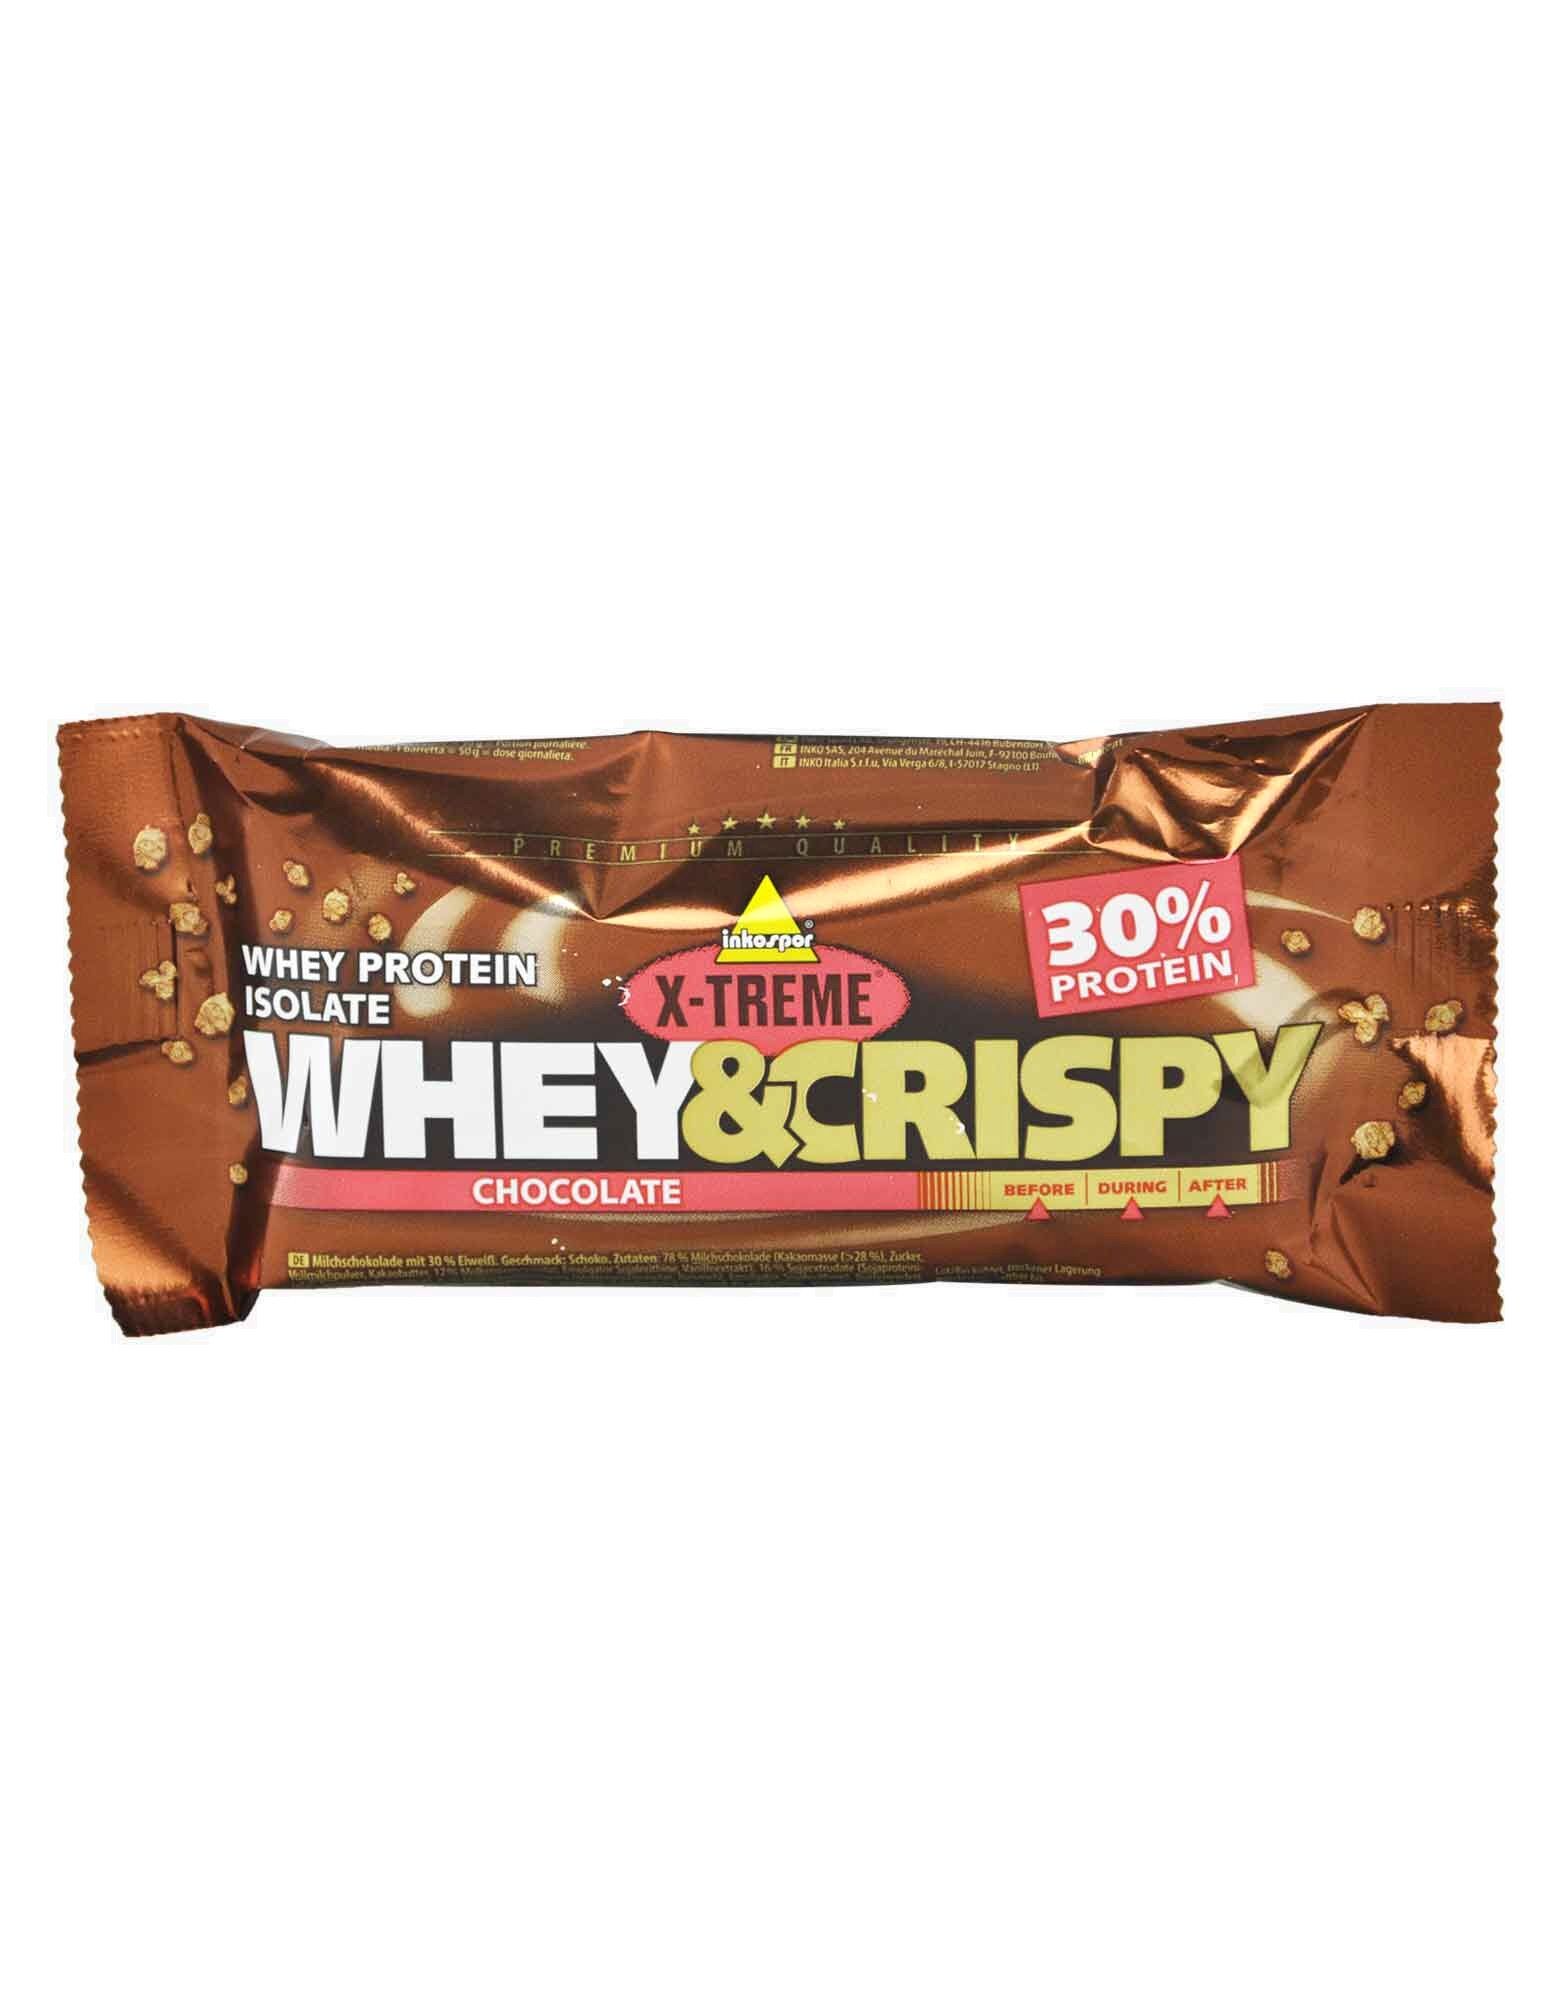 INKOSPOR X-Treme Whey&crispy 1 Barretta Da 50 Grammi Cioccolato